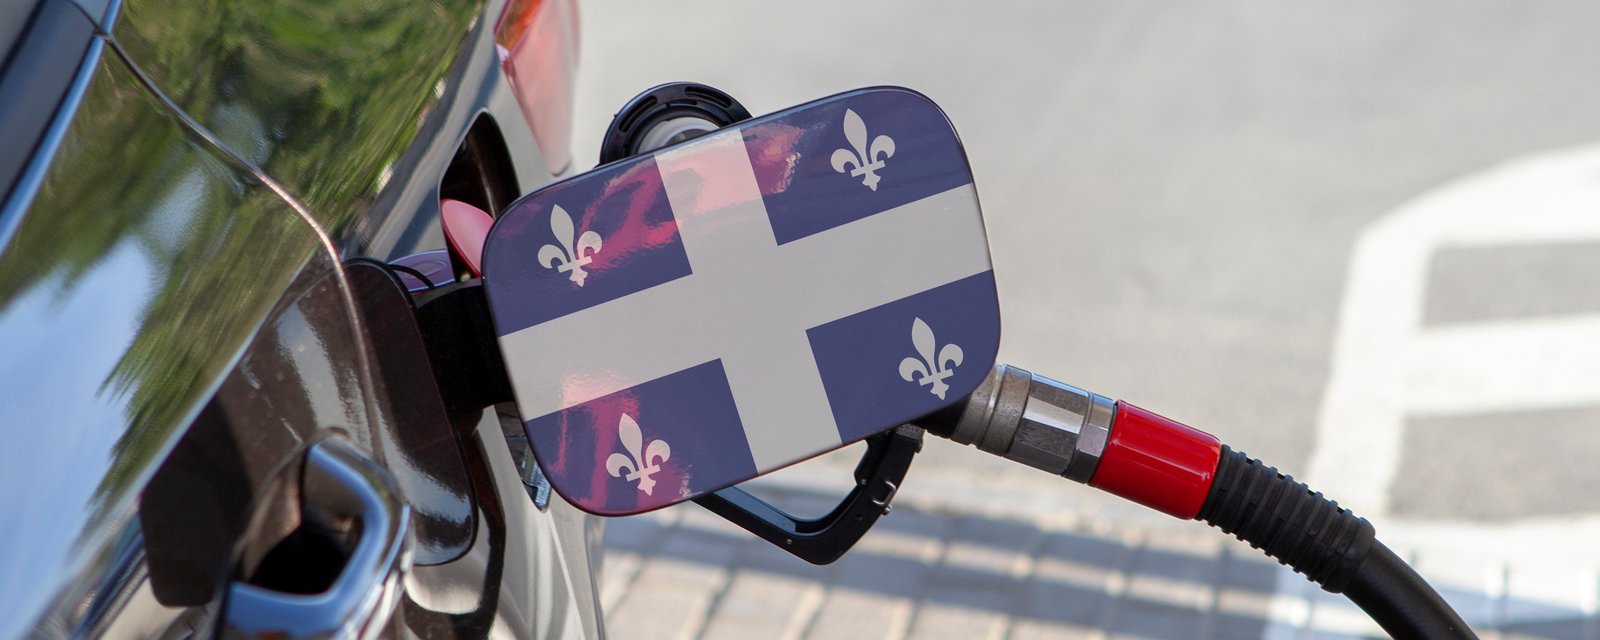 La différence actuelle du prix de l'essence entre le Québec et l'Ontario est ridicule !